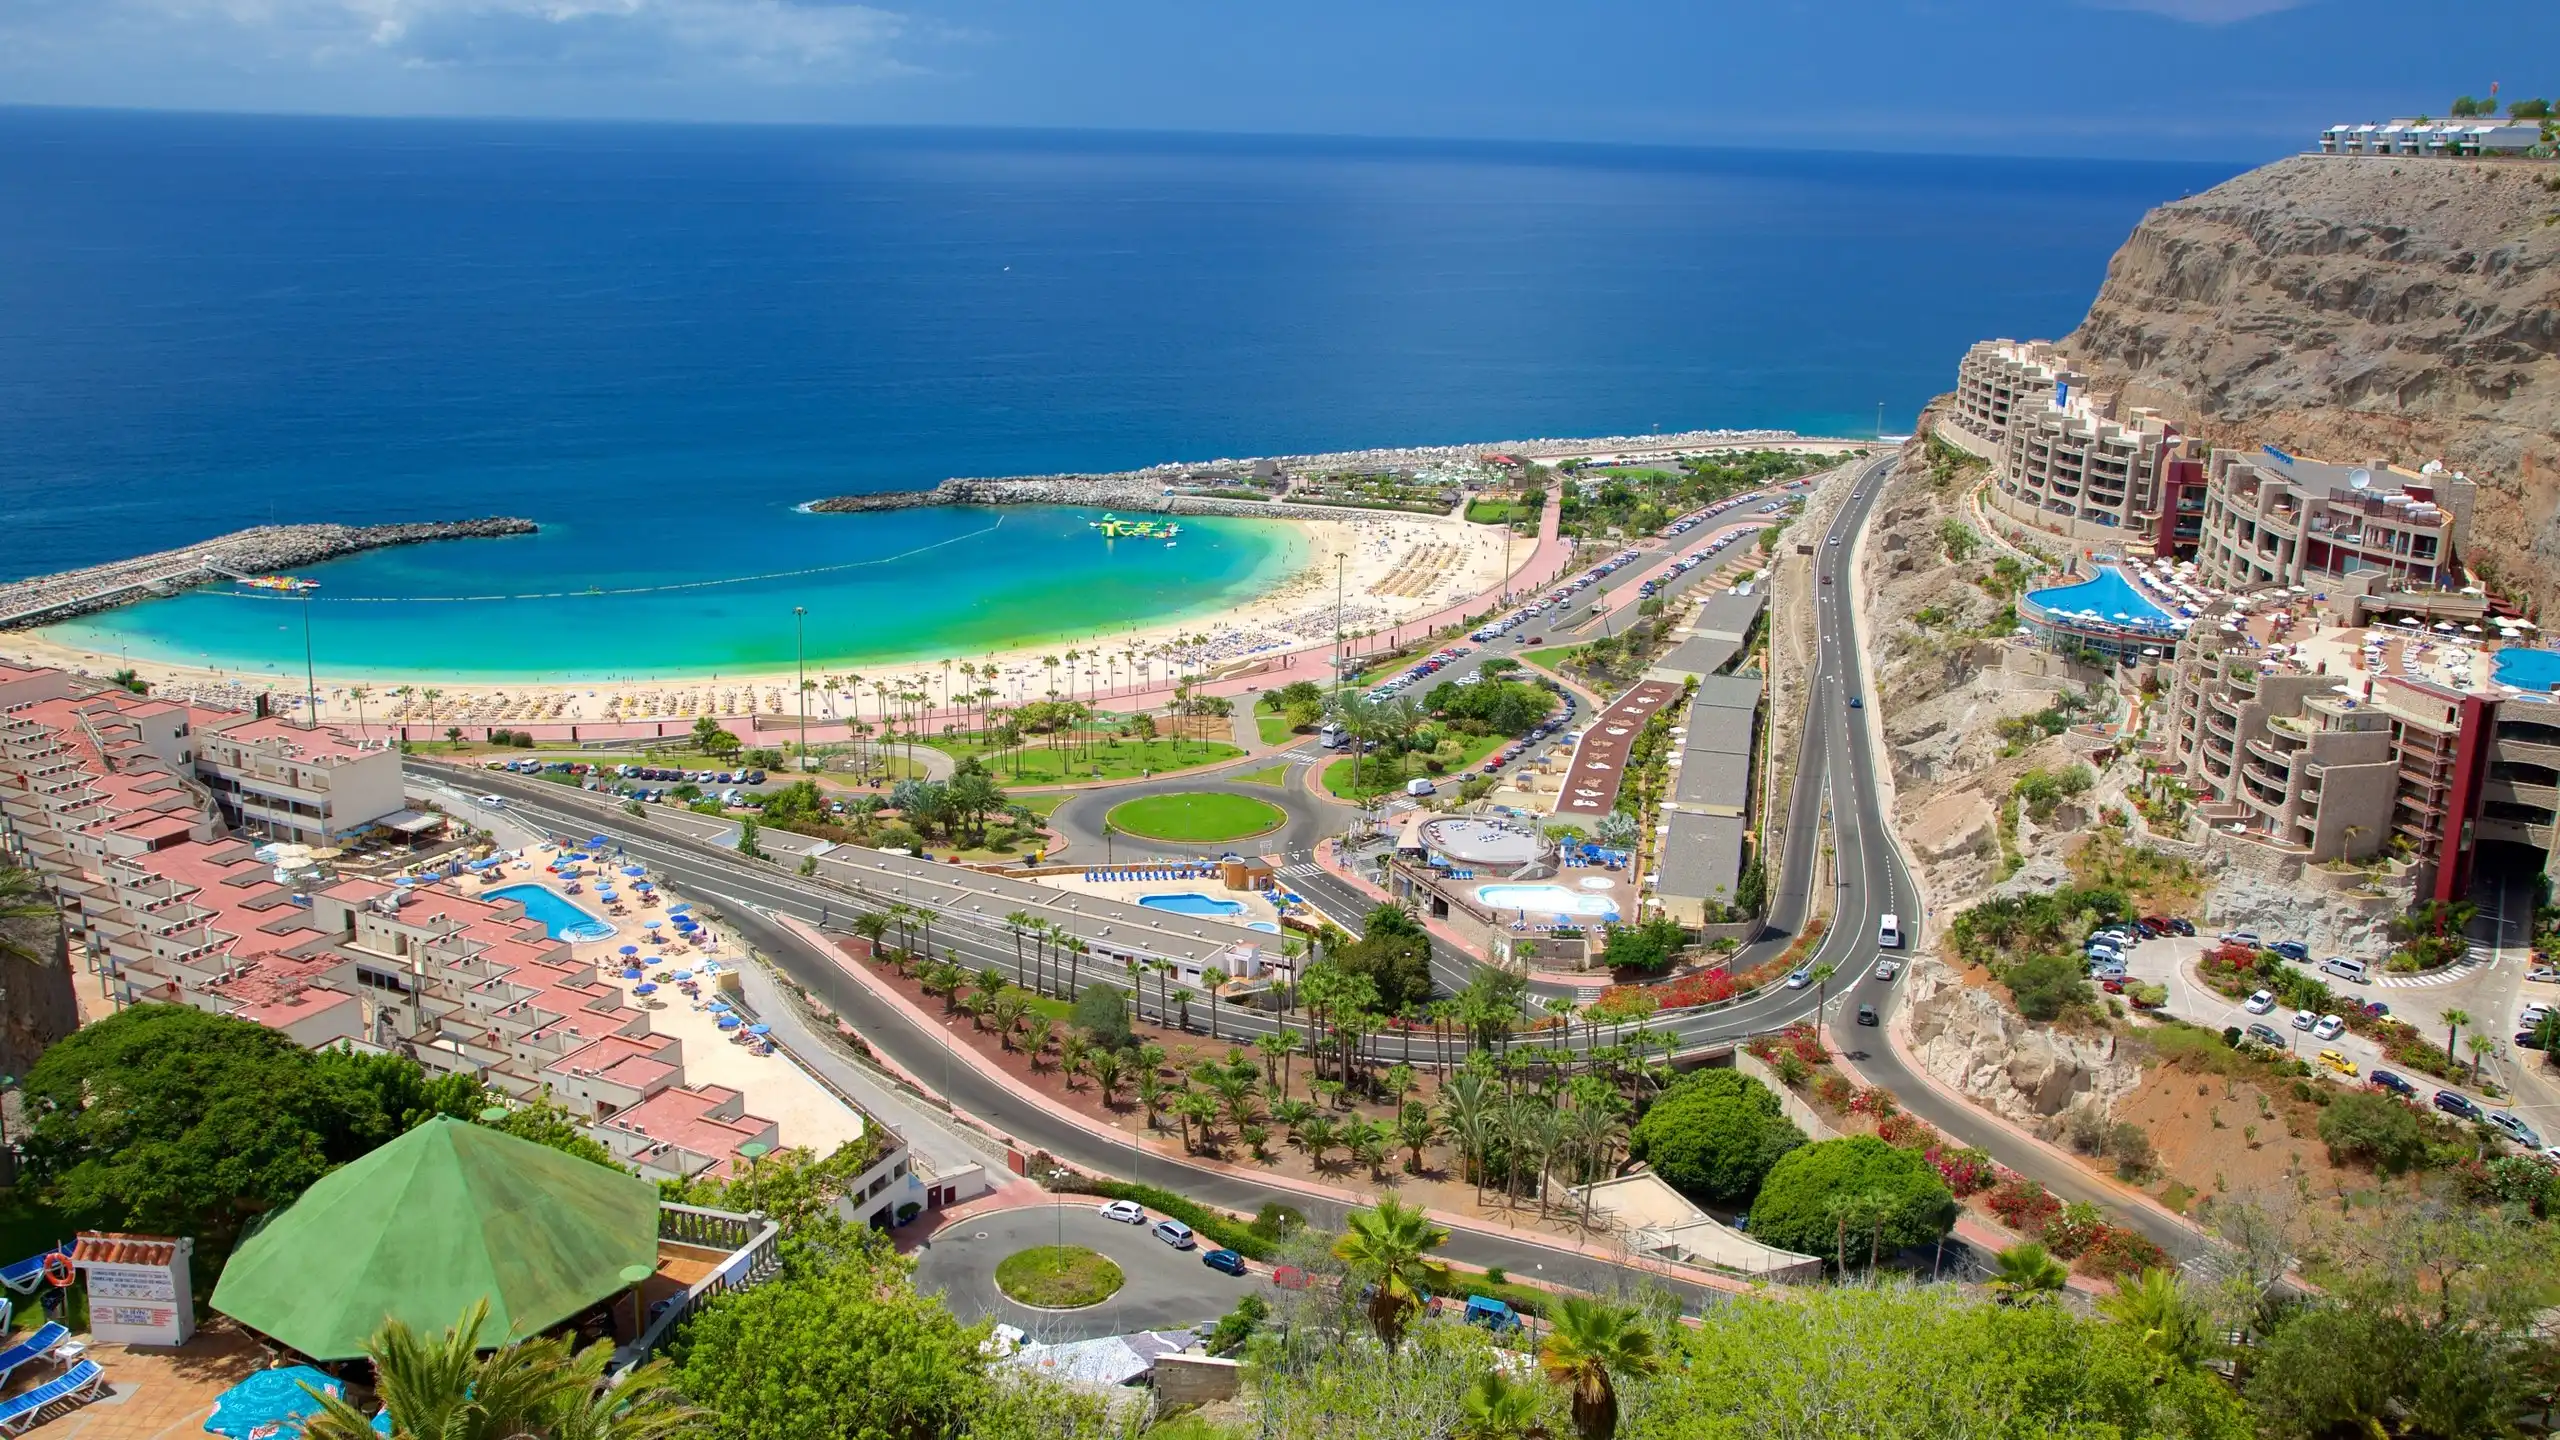 Las Palmas tourism